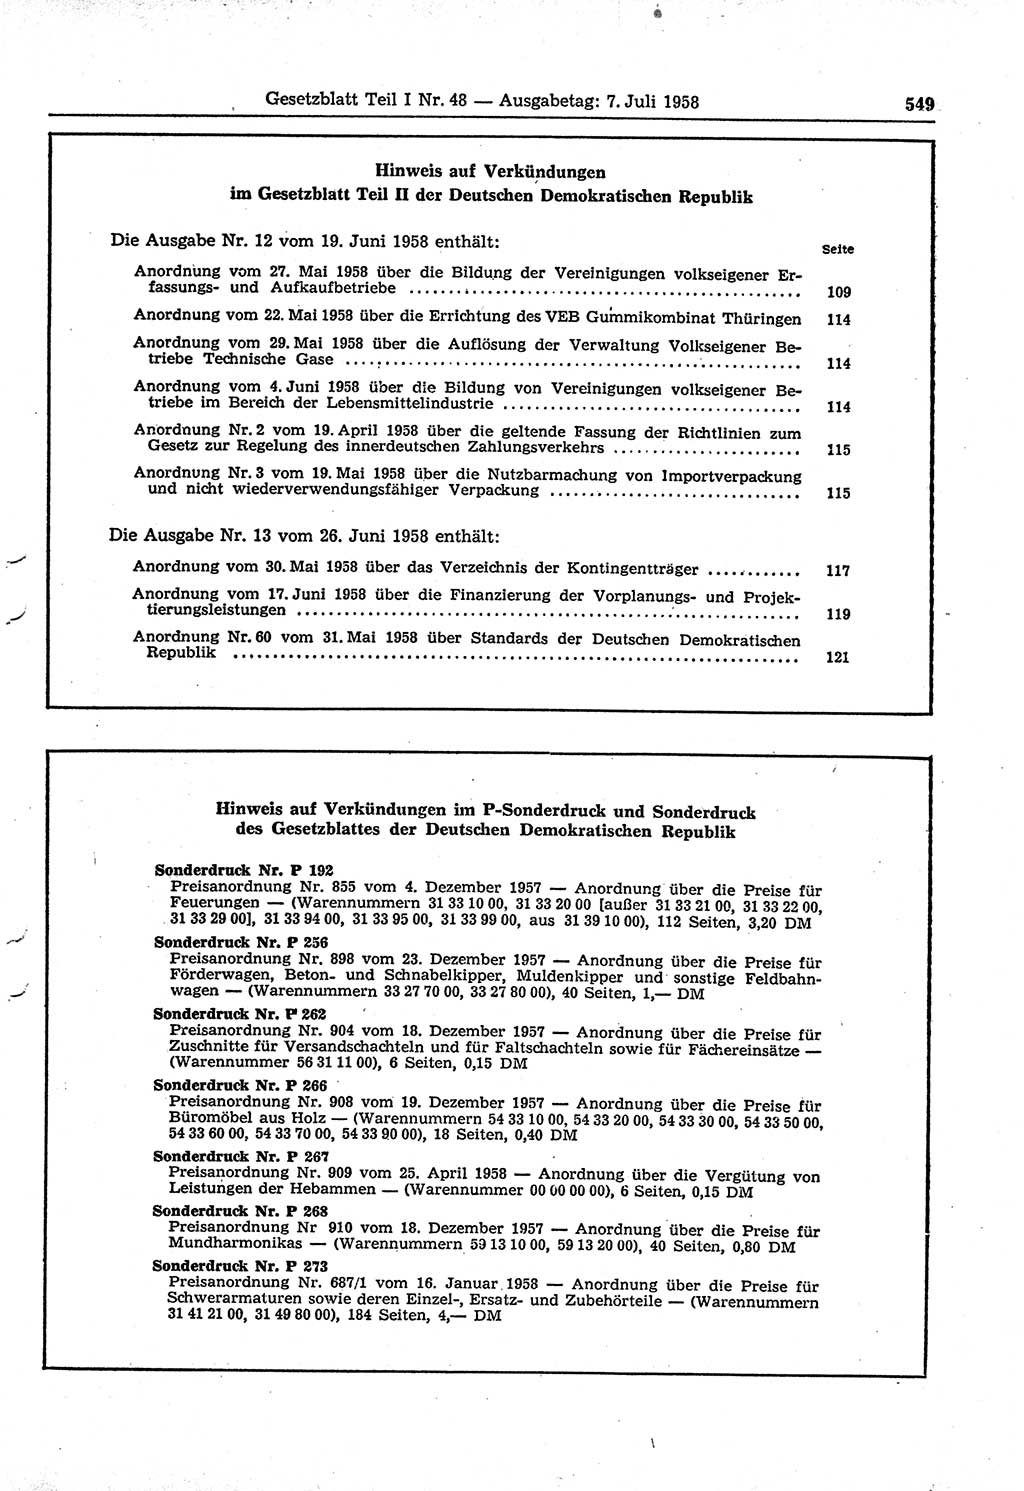 Gesetzblatt (GBl.) der Deutschen Demokratischen Republik (DDR) Teil Ⅰ 1958, Seite 549 (GBl. DDR Ⅰ 1958, S. 549)